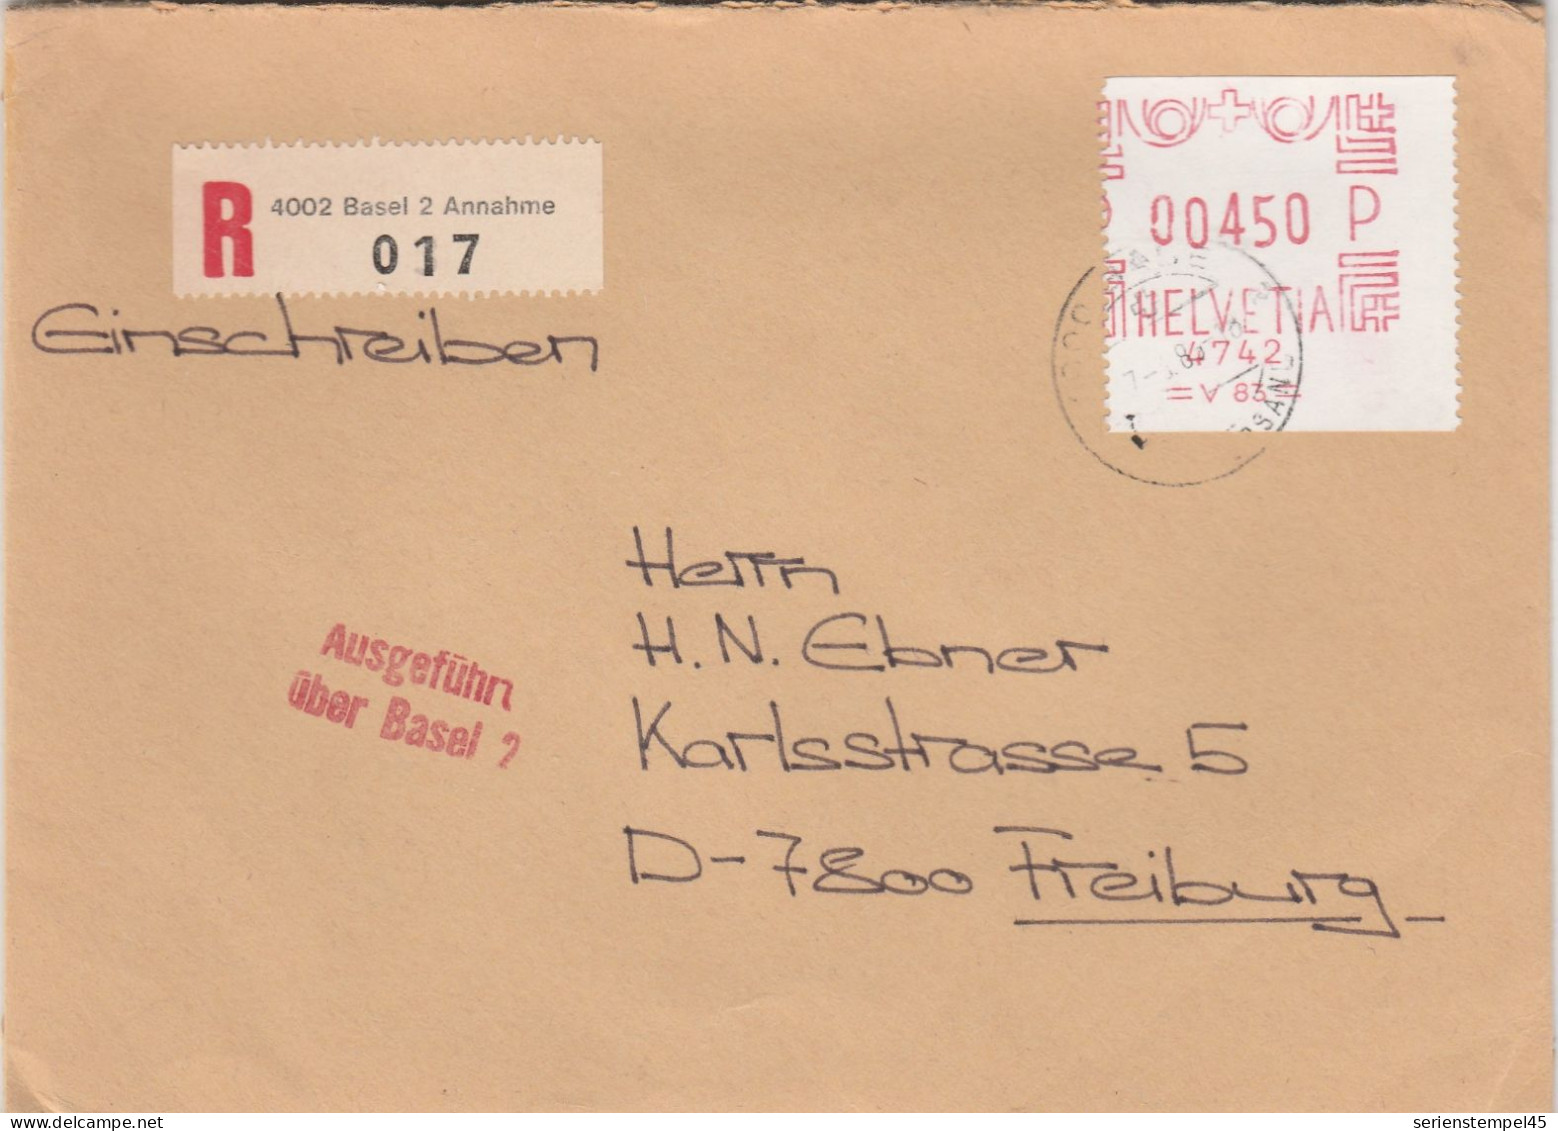 Schweiz Einschreiben Brief 4002 Basel 2 Annahme Mit Freistempel 4742 Porto 450 P 1985 - Frankeermachinen